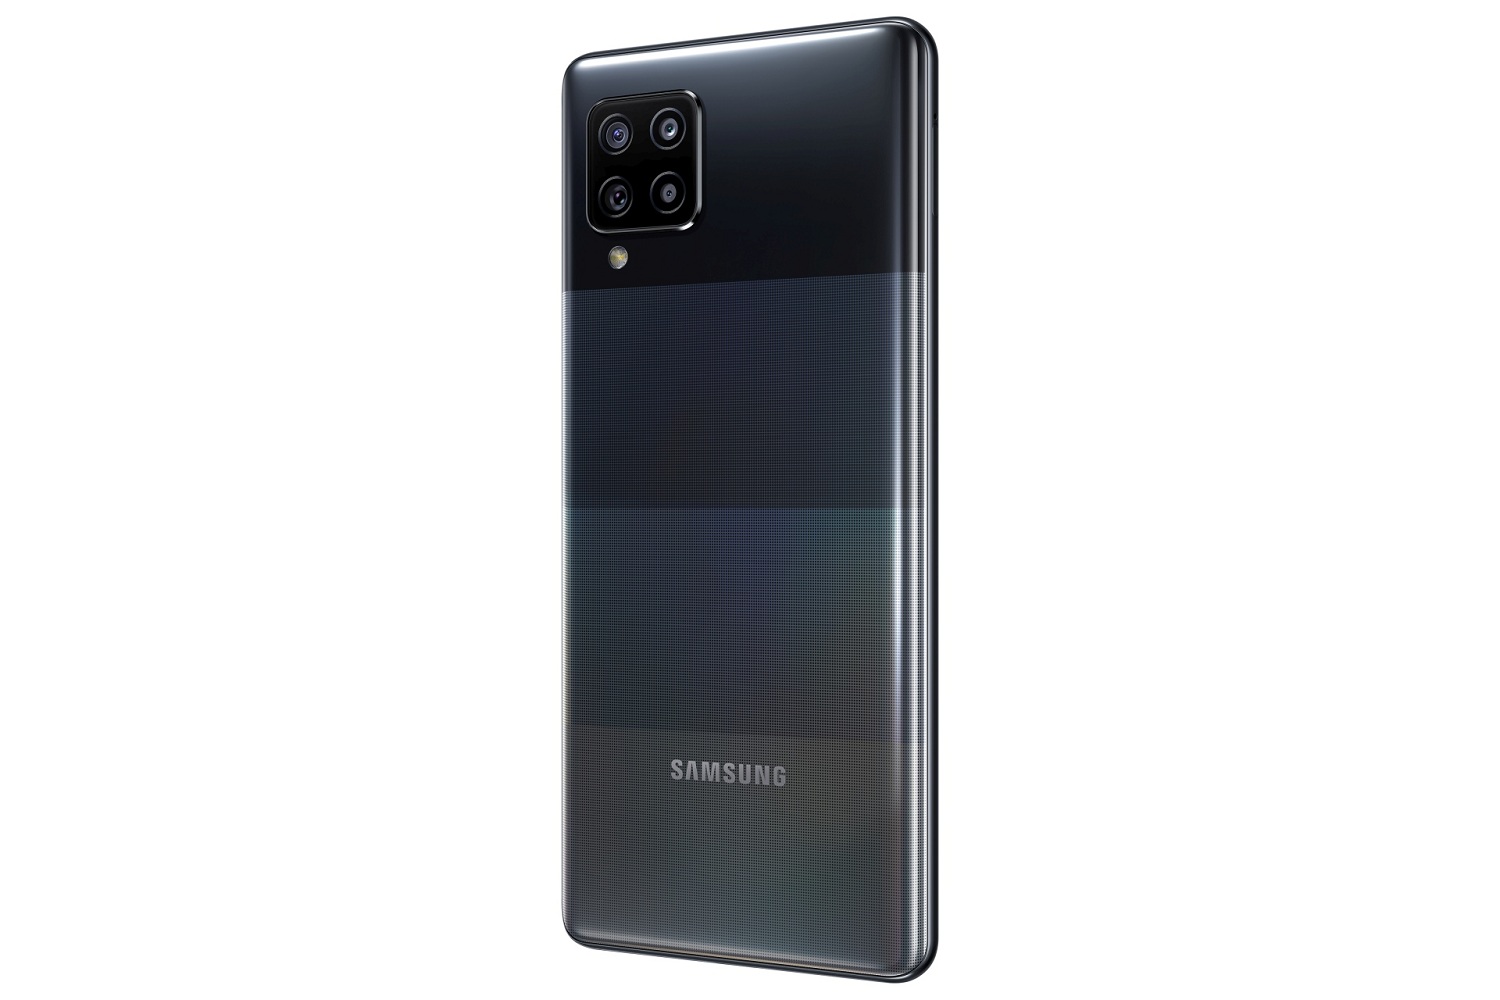 Samsung Galaxy A42 5G - Cari Tahu Harga dan Spesifikasinya